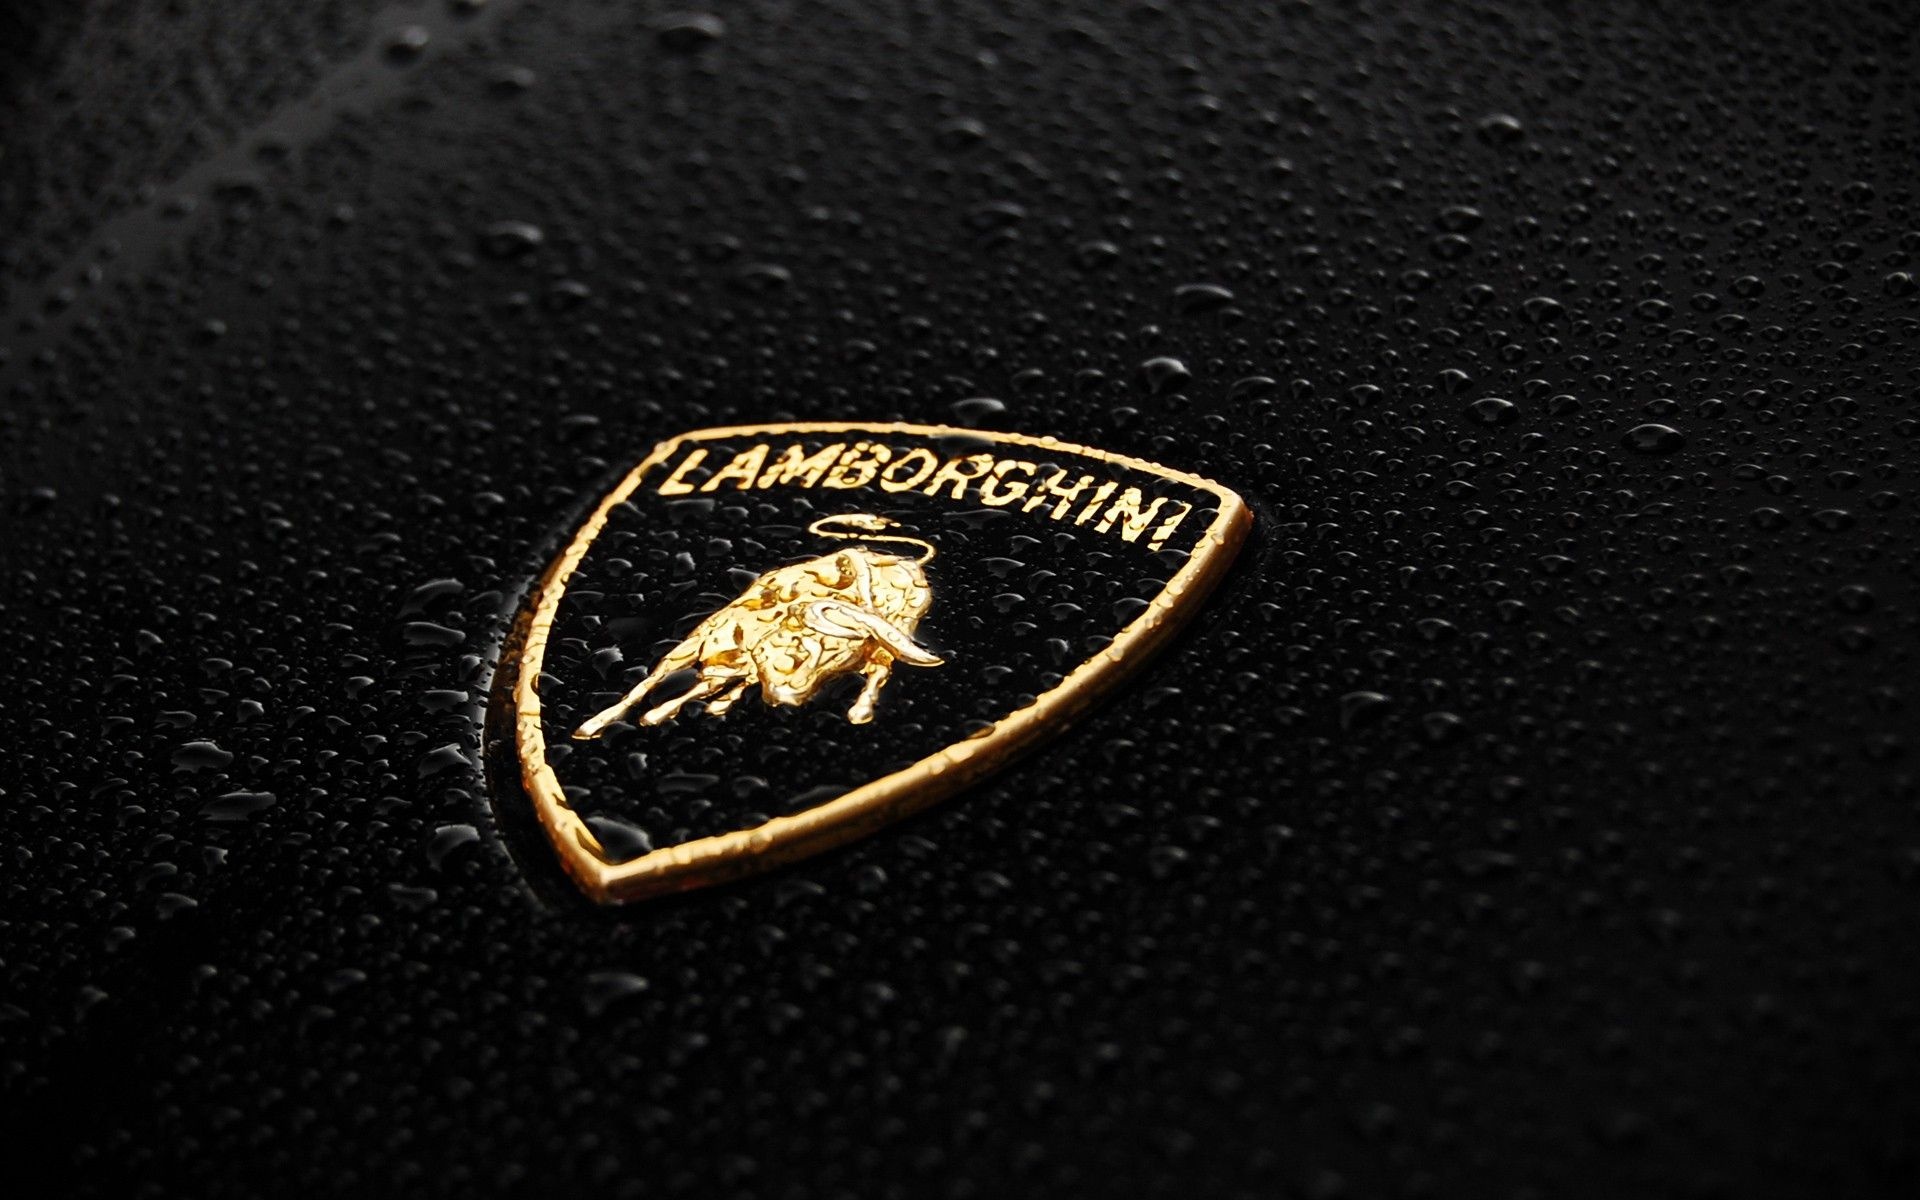 Lamborghini Logo, Stunning backgrounds, Exquisite design, Premium image, 1920x1200 HD Desktop